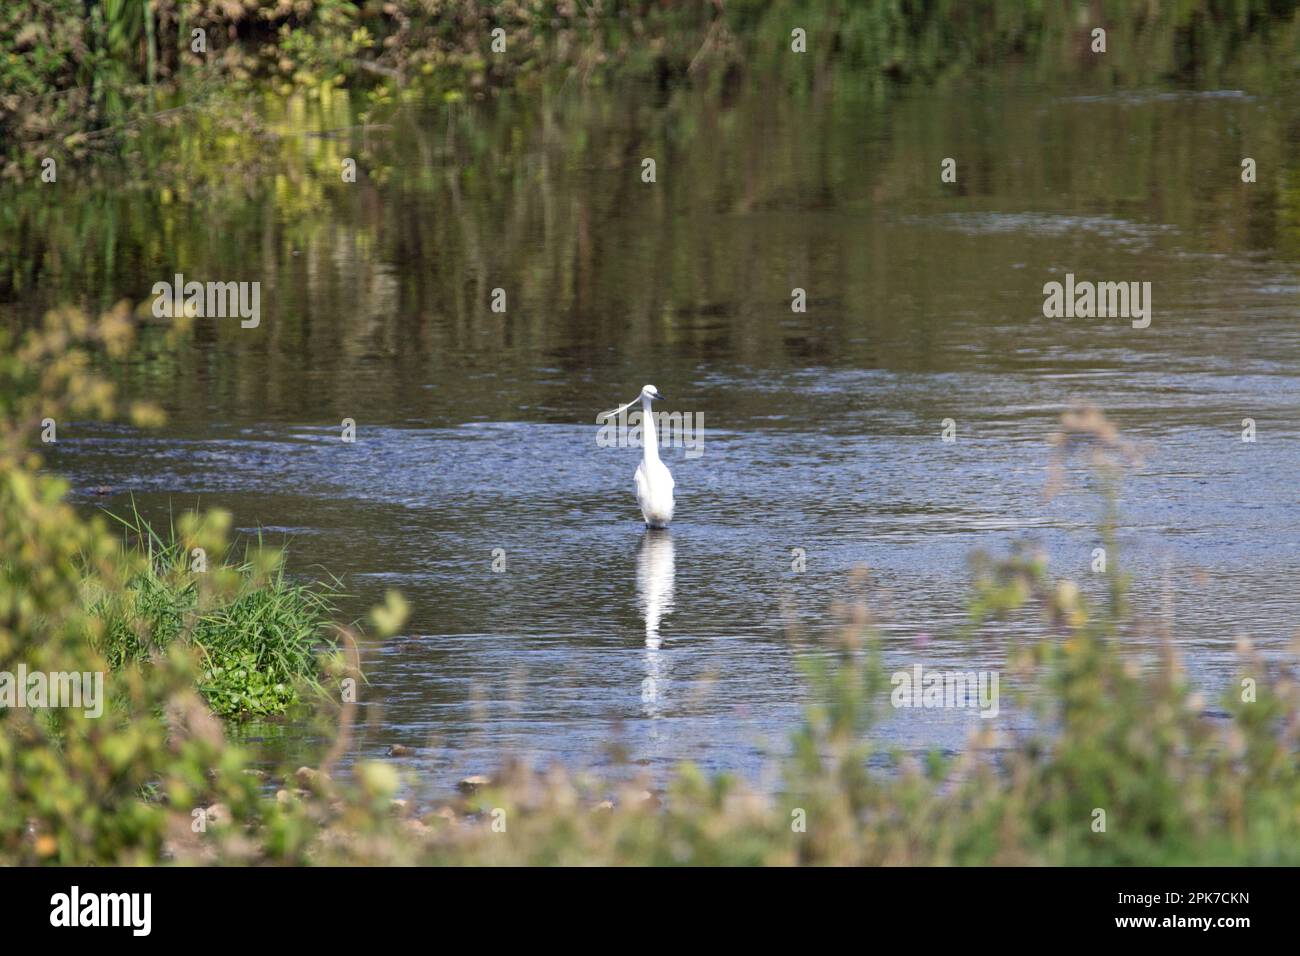 Piccola gretta (Egretta garzetta) in mezzo ad un fiume con piante che crescono intorno e si riflettono nell'acqua Foto Stock